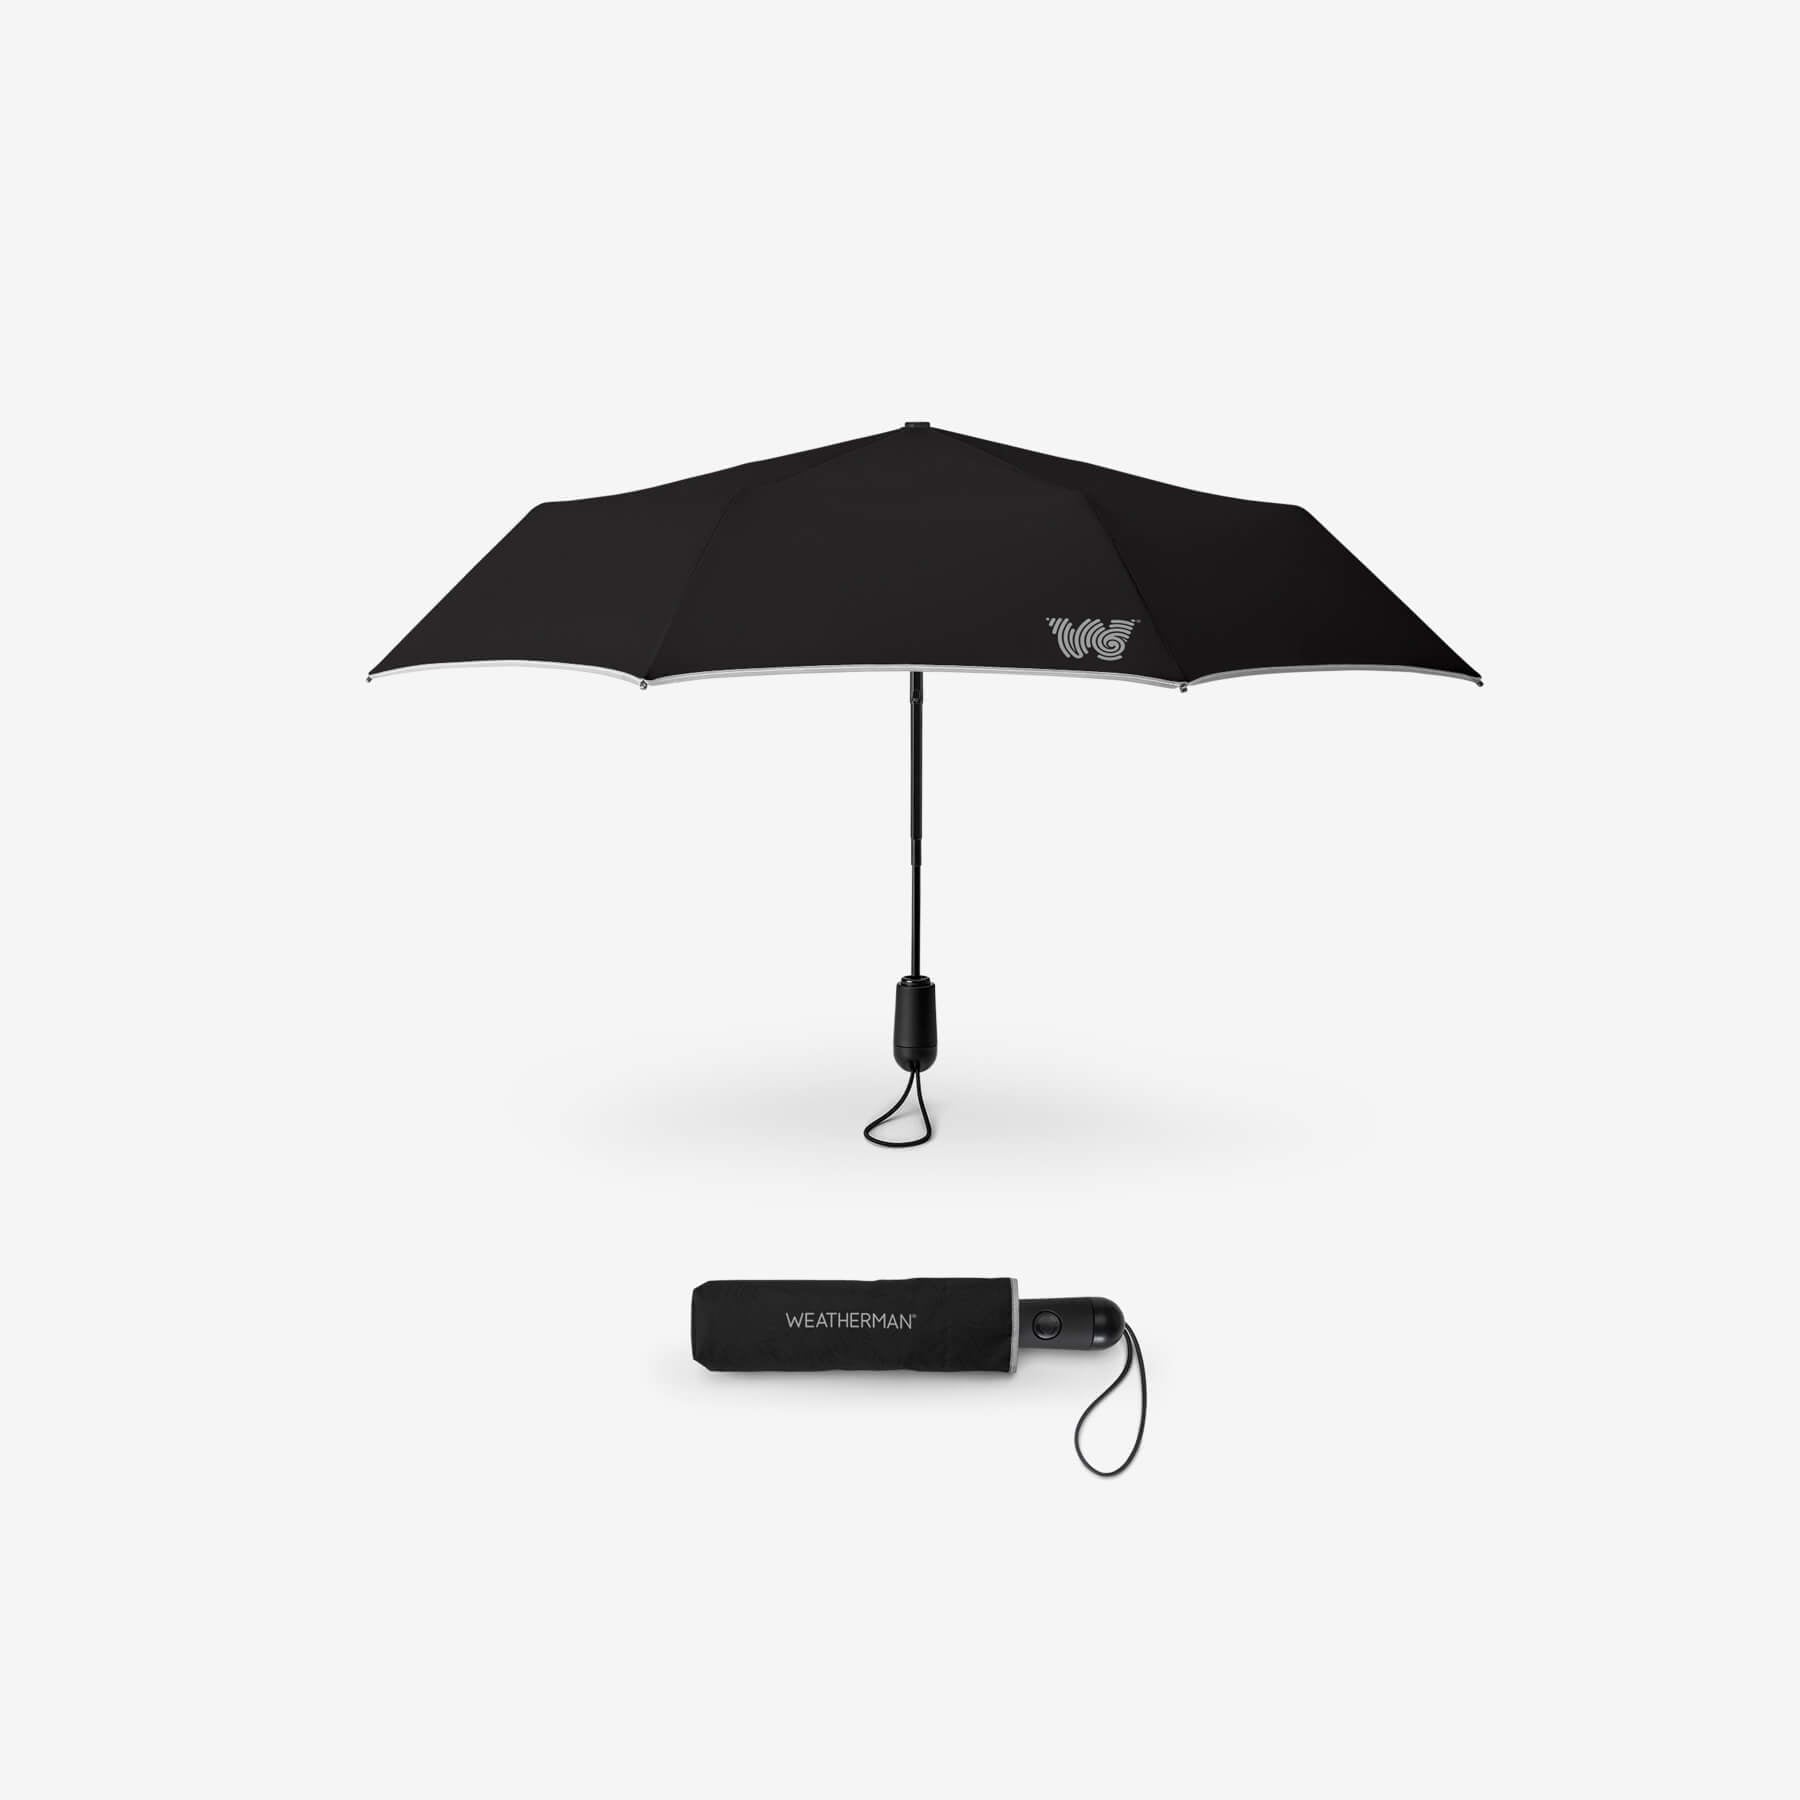 the best travel umbrella